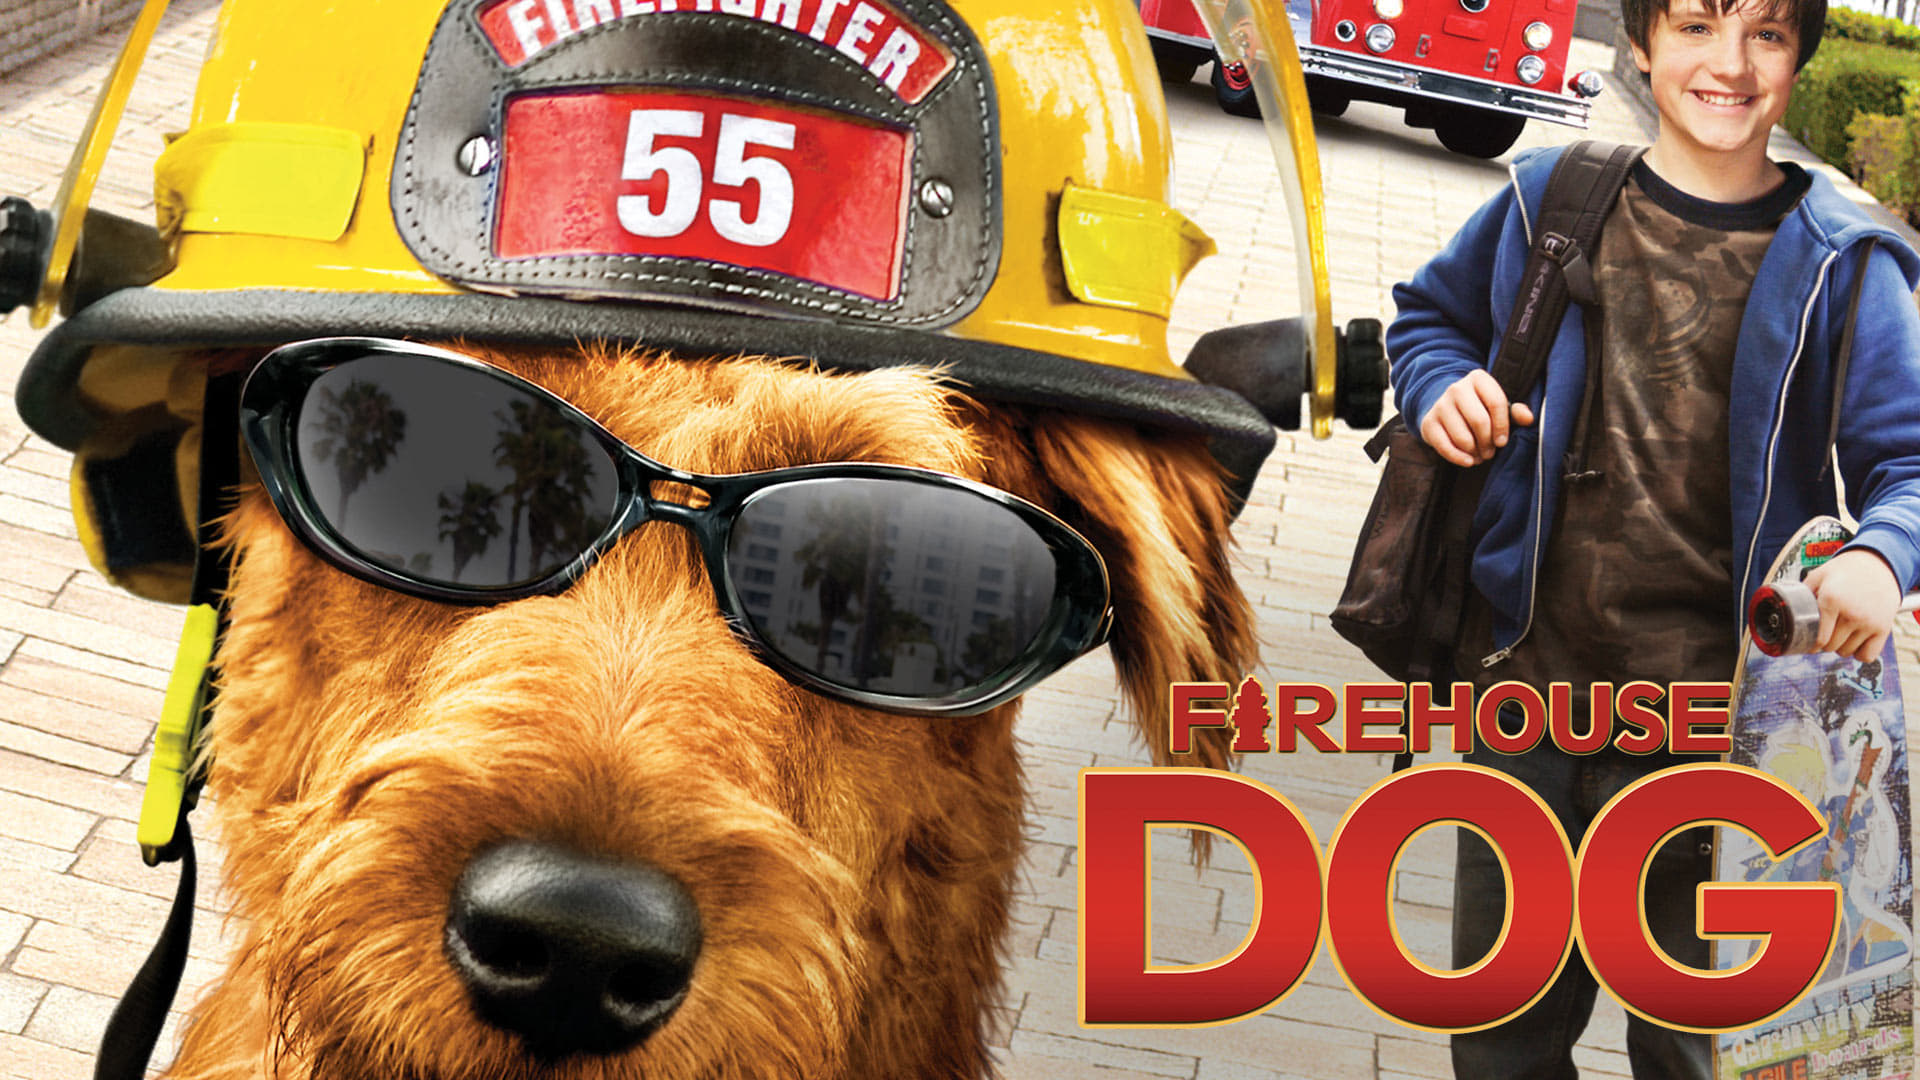 Tűzoltó kutya (2007)